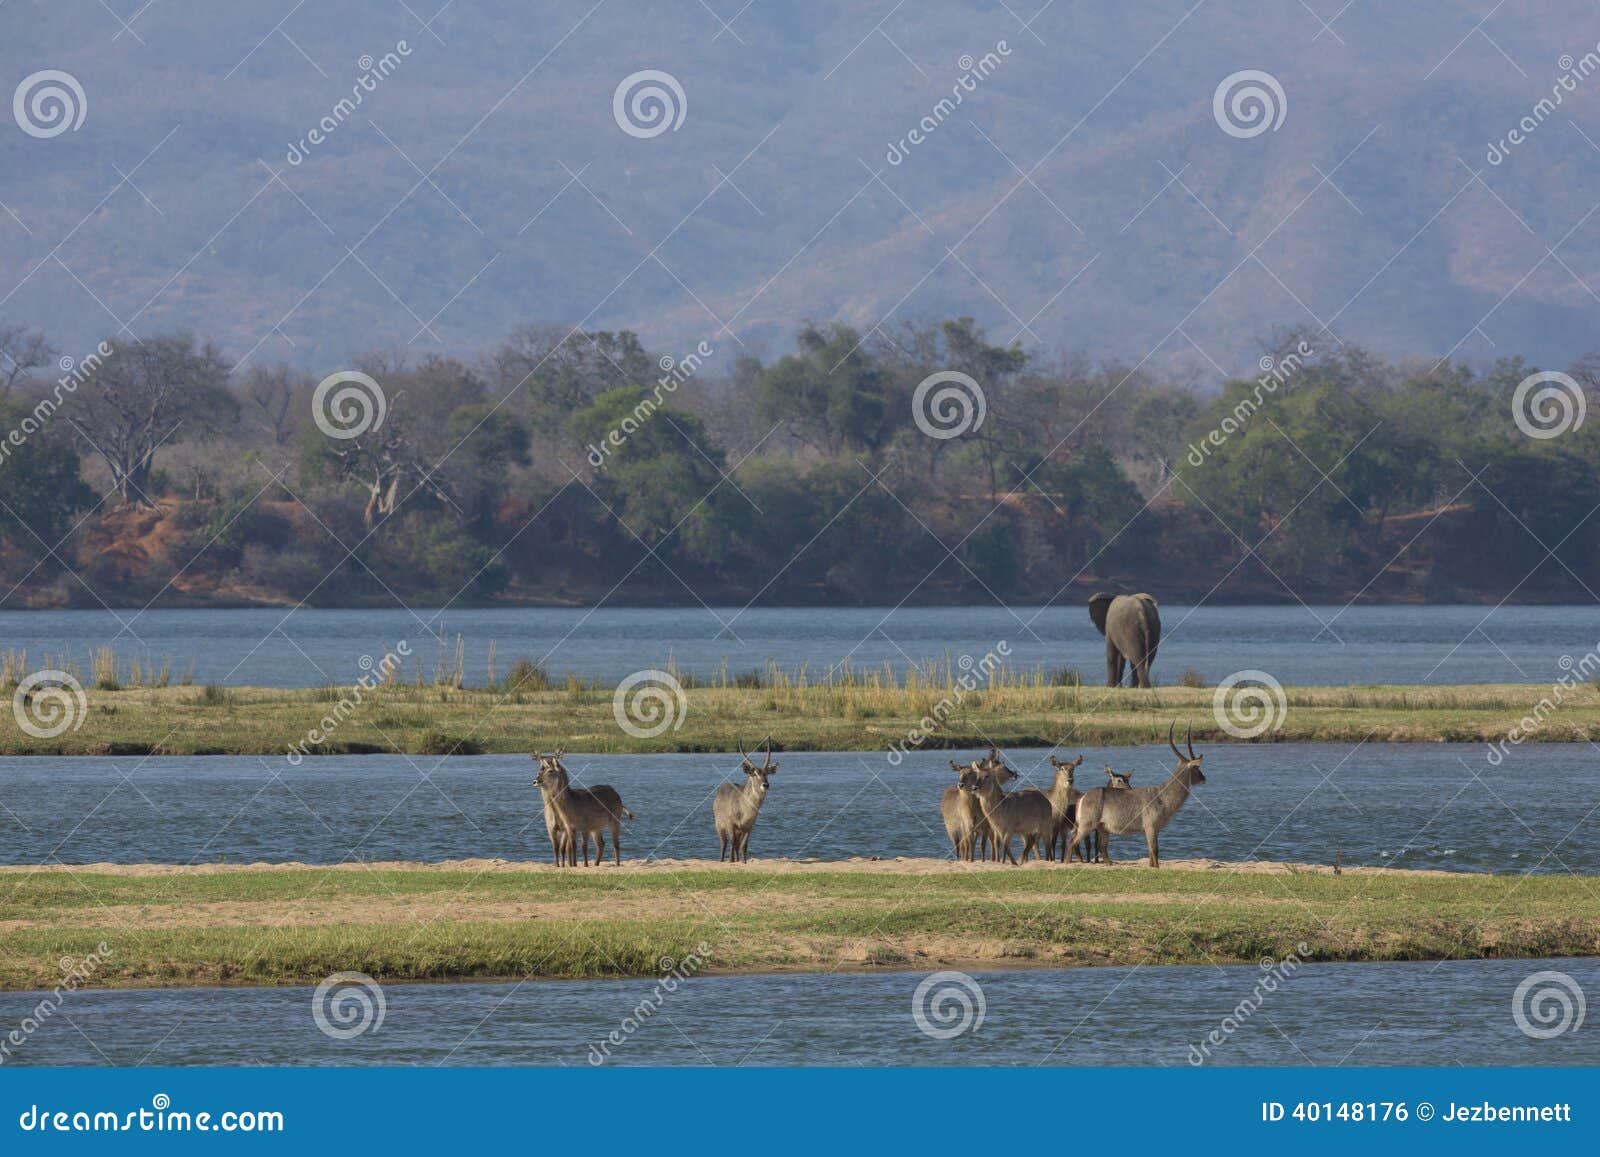 common waterbuck and elephant by the zambezi river